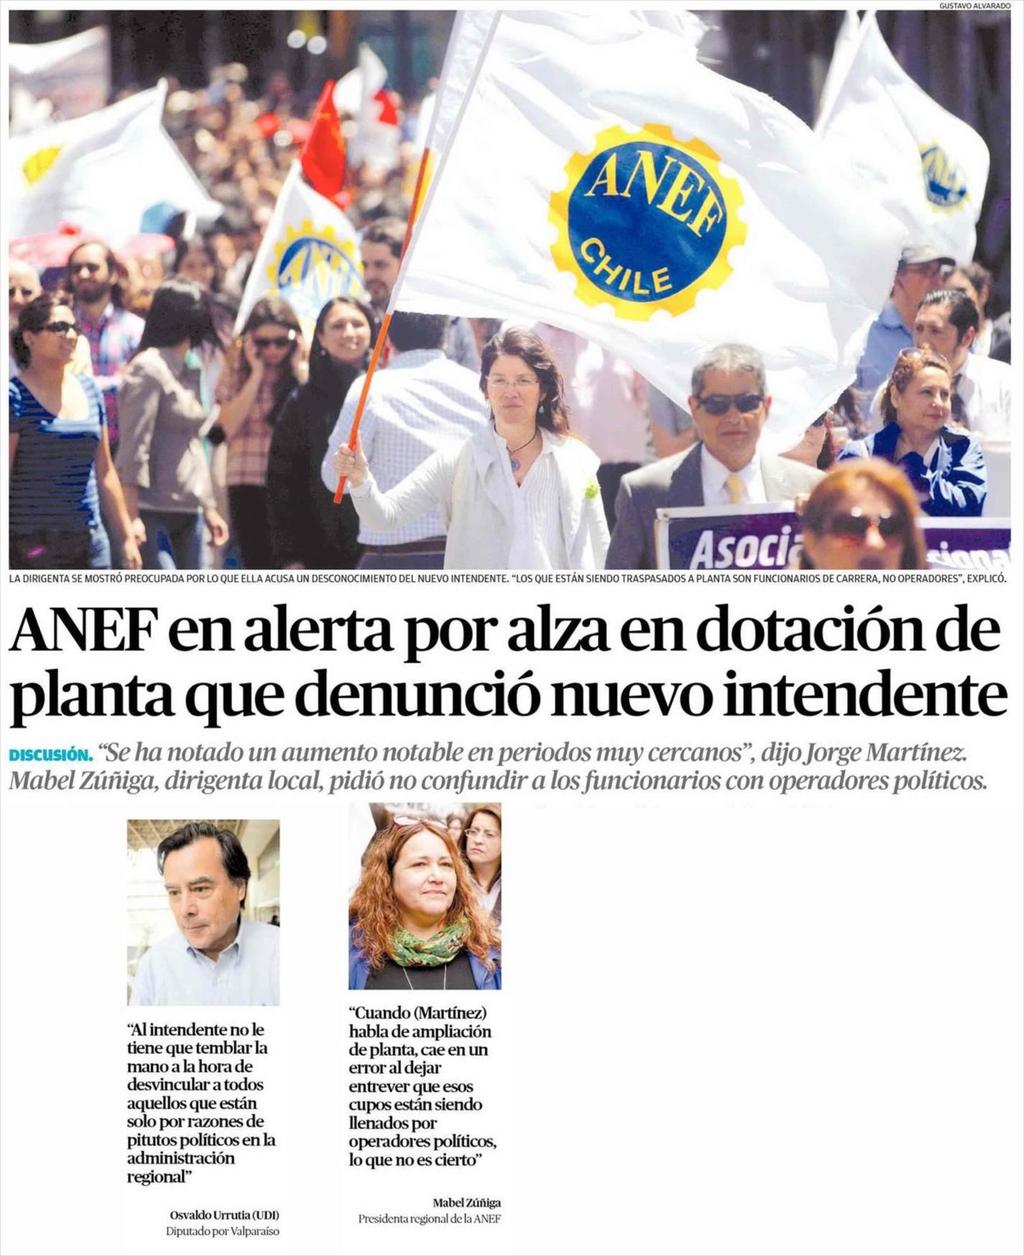 Fecha: 05-03-2018 Fuente: El Mercurio de (Valparaiso - Chile) 2 2 ANEF en alerta por